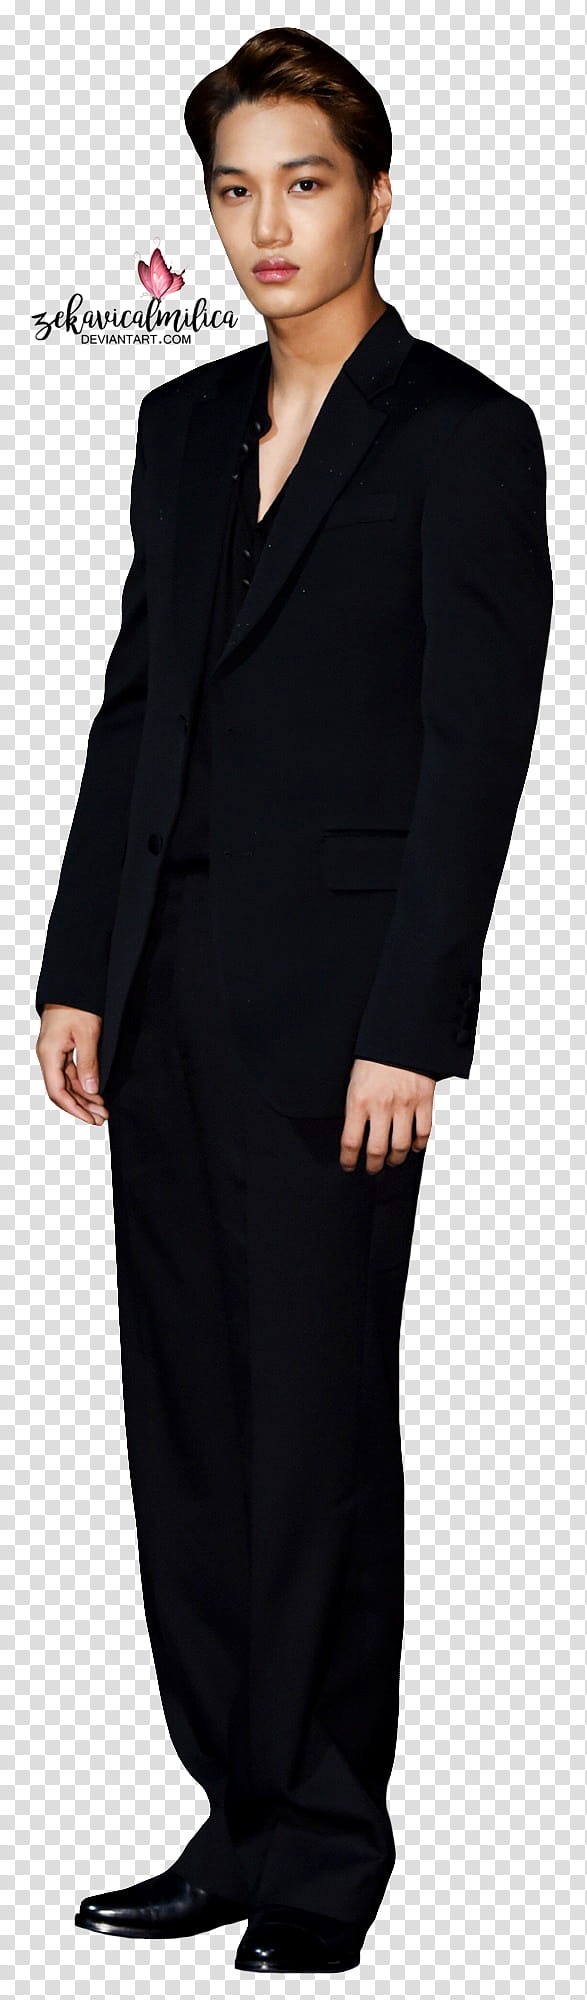 EXO Kai  ELLE Style Awards, men's black suit jacket transparent background PNG clipart